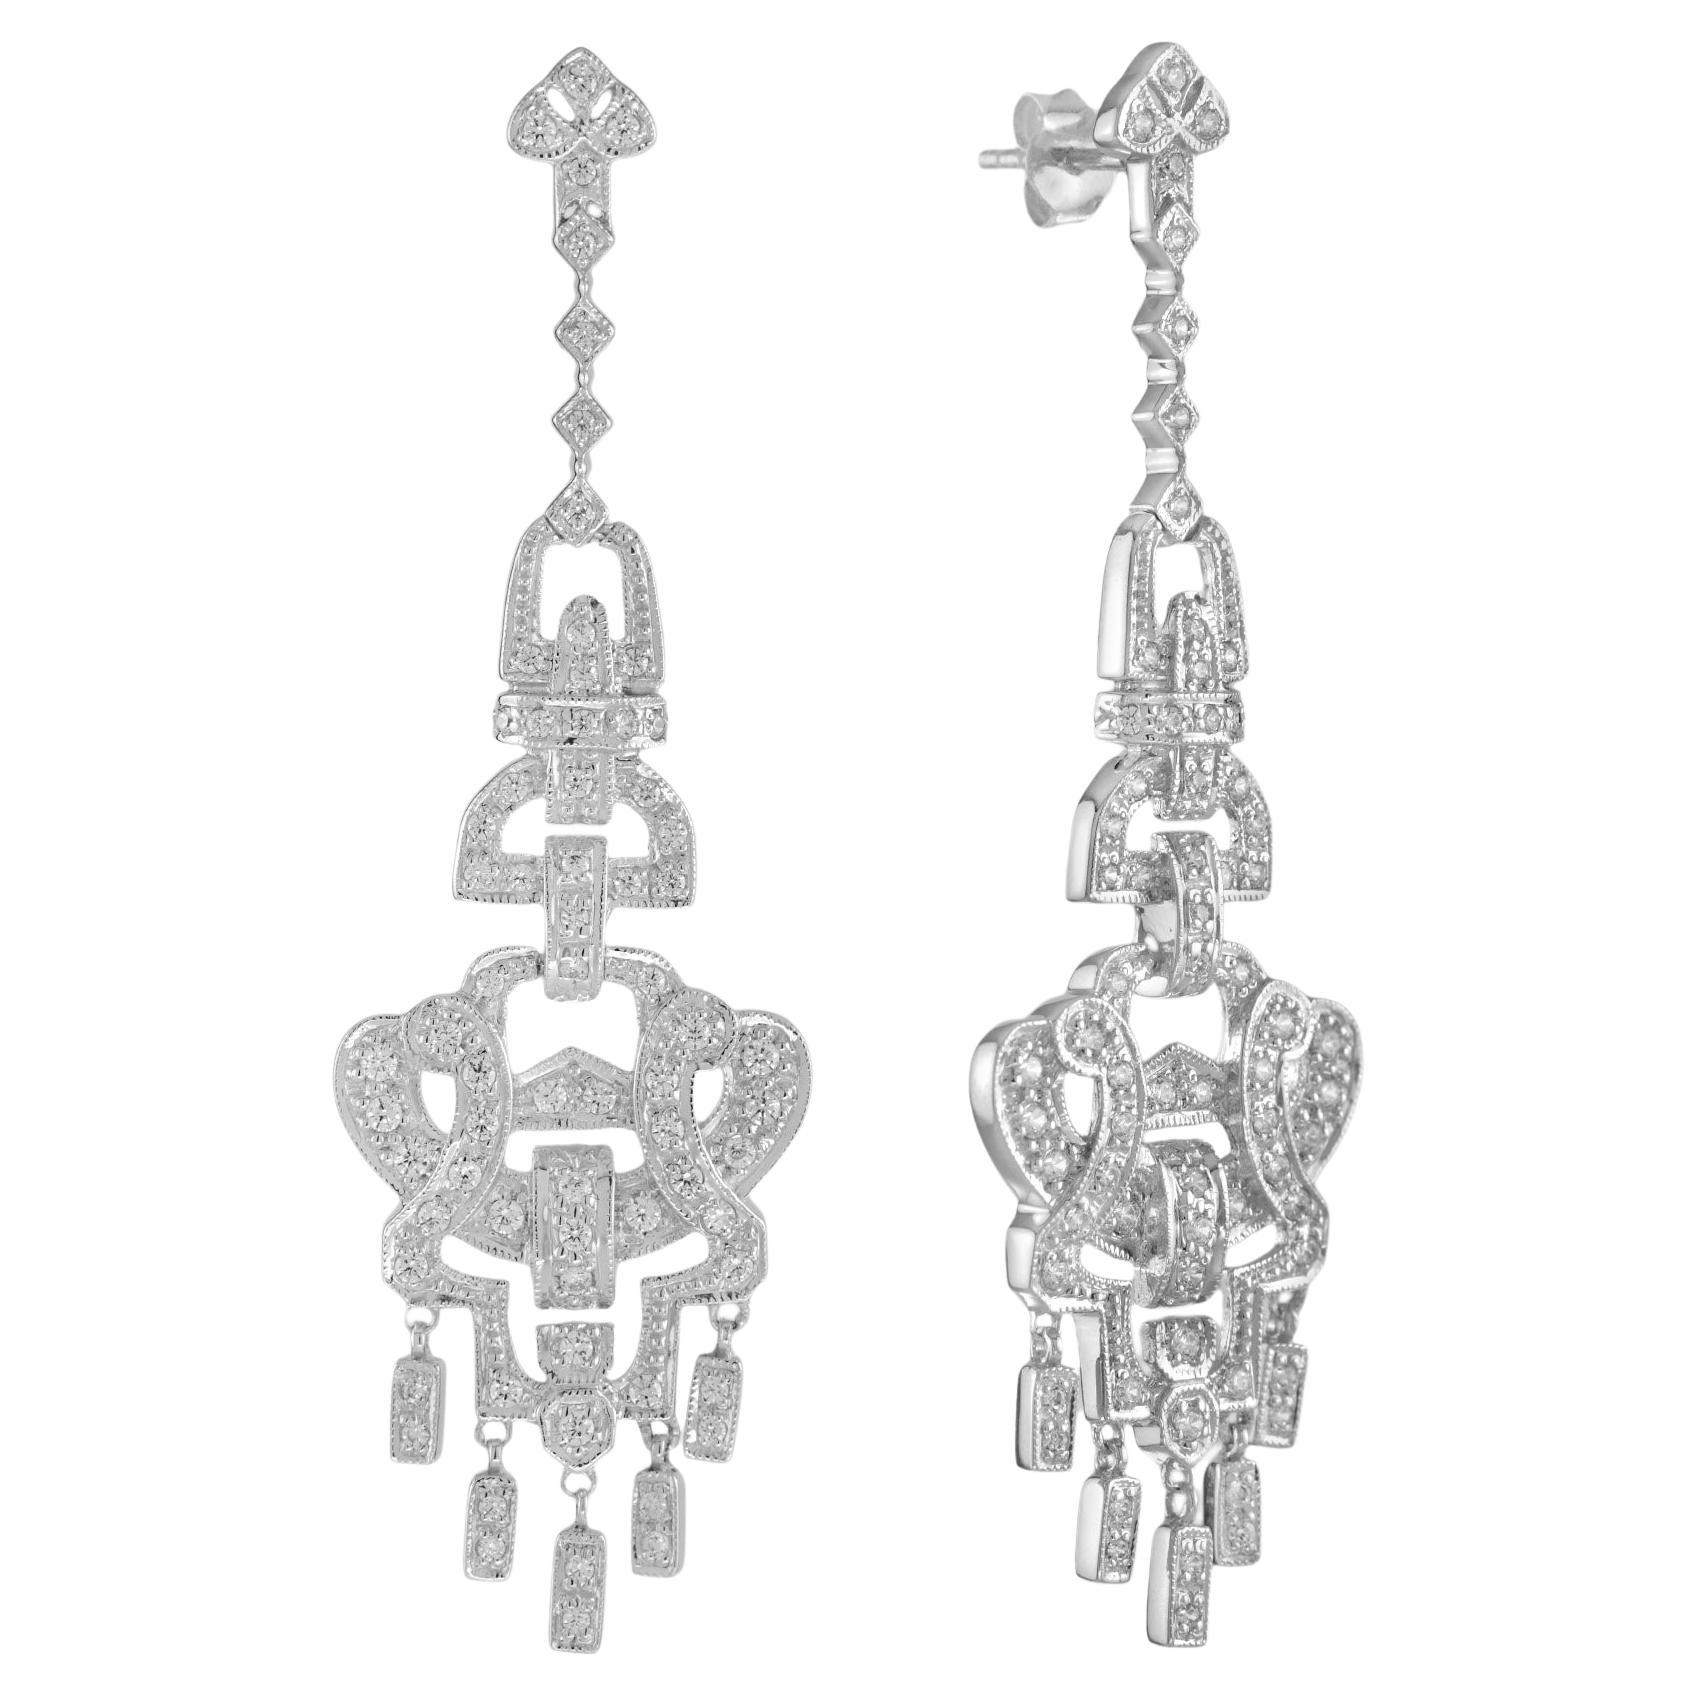 Art Deco Style Diamond Chandelier Earrings in 14K White Gold